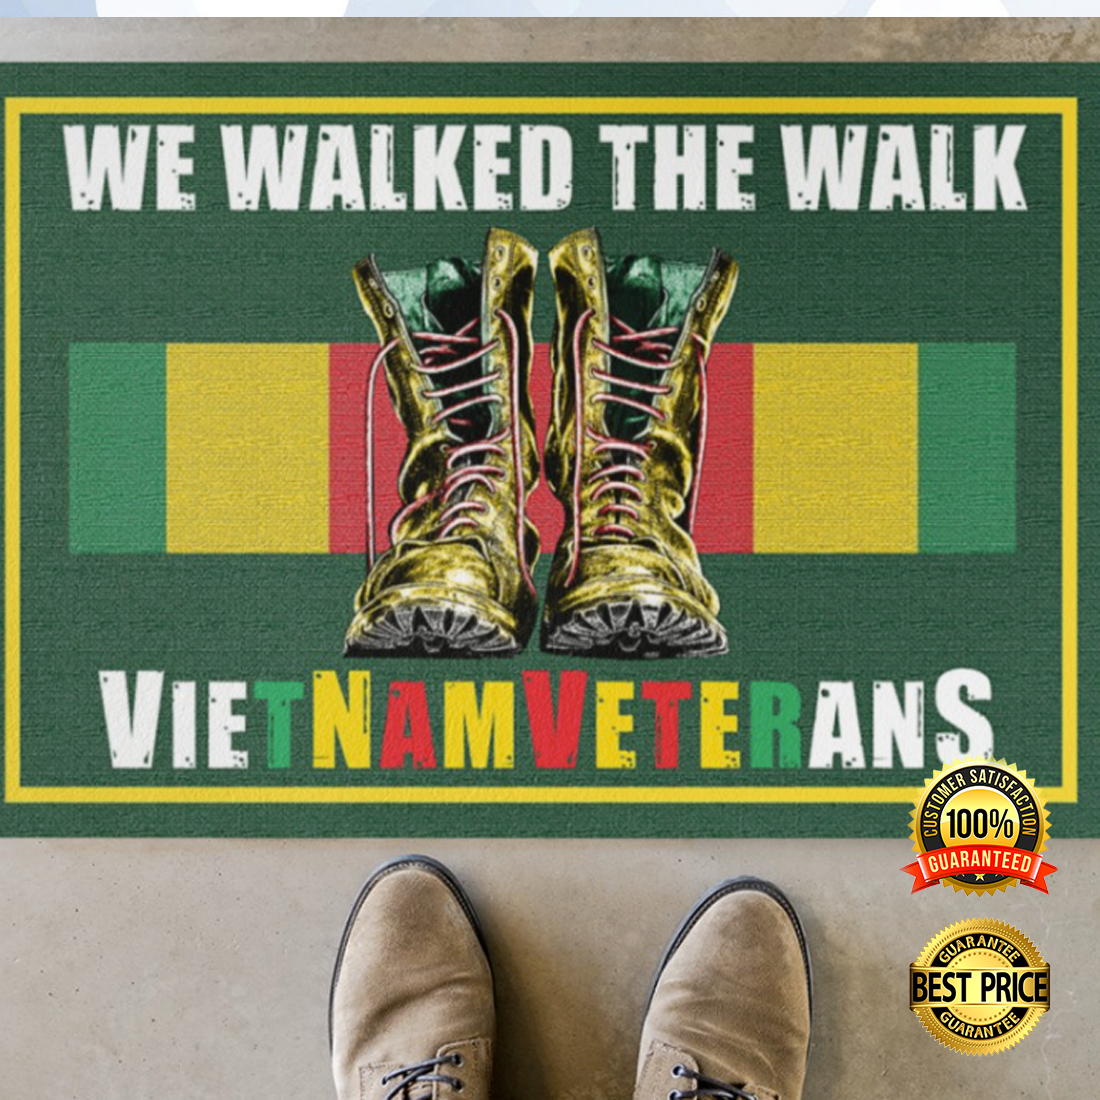 We walked the walk Vietnam veterans doormat 4